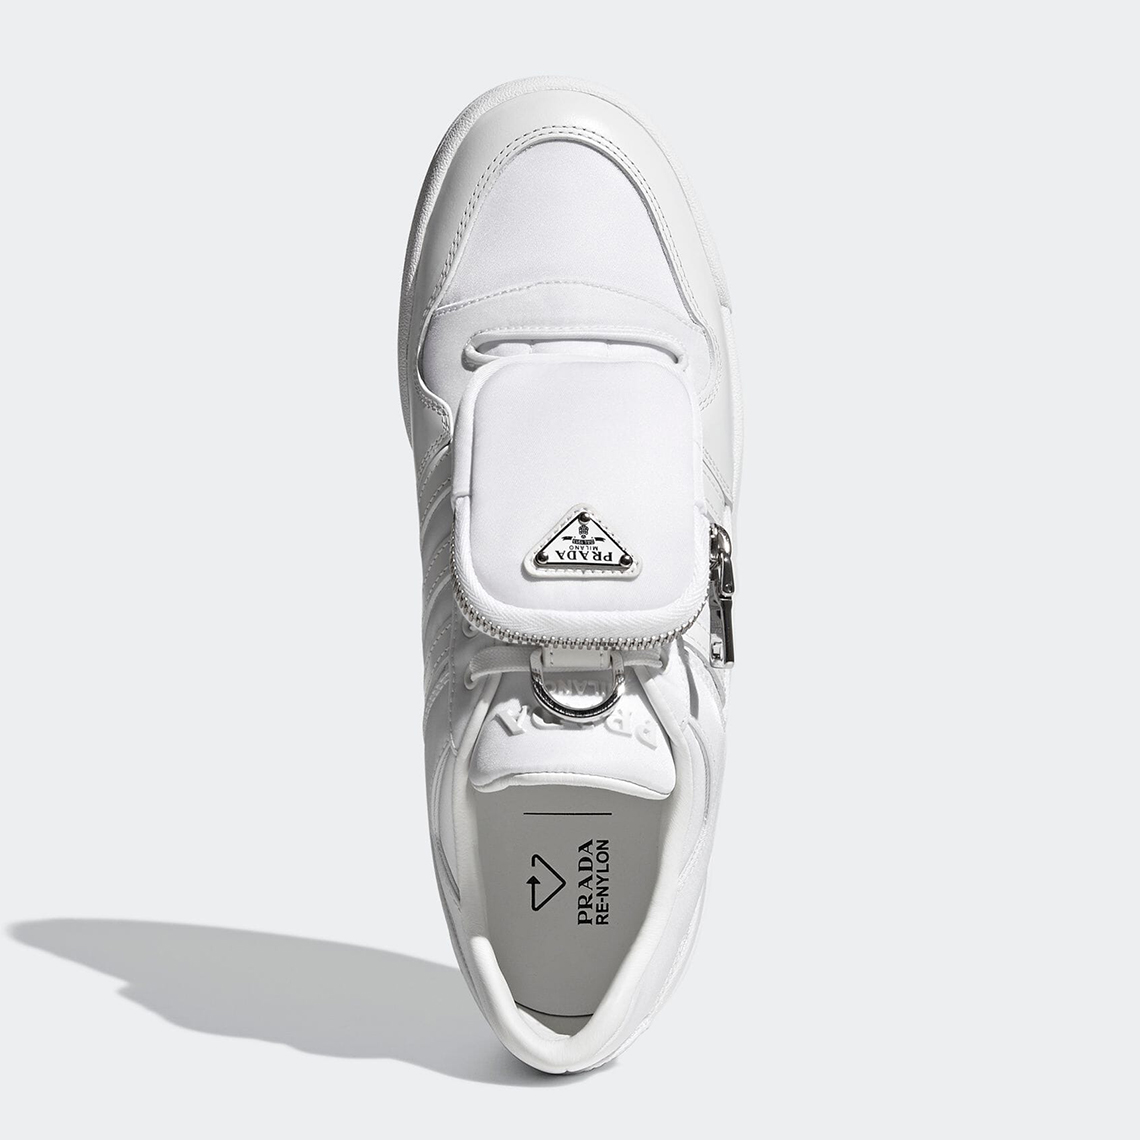 Prada For Adidas Forum Lo Re Nylon Core White Gy7042 7